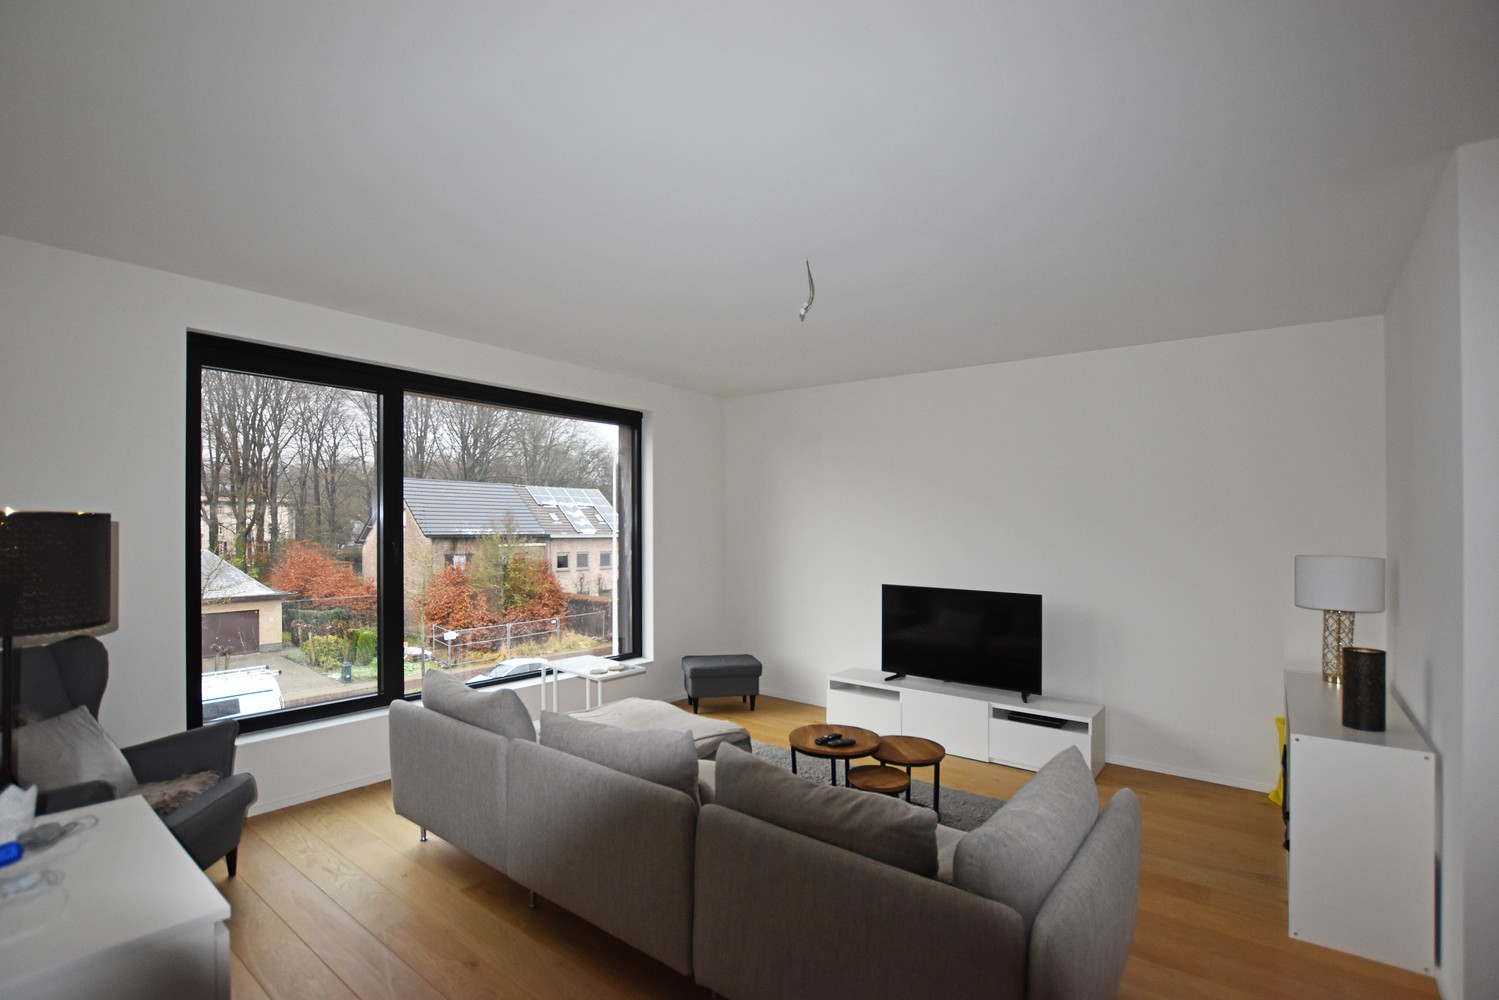 Stijlvol afgewerkt appartement met 2 slaapkamers, terras & autostaanplaats/garagebox in Wijnegem! afbeelding 1